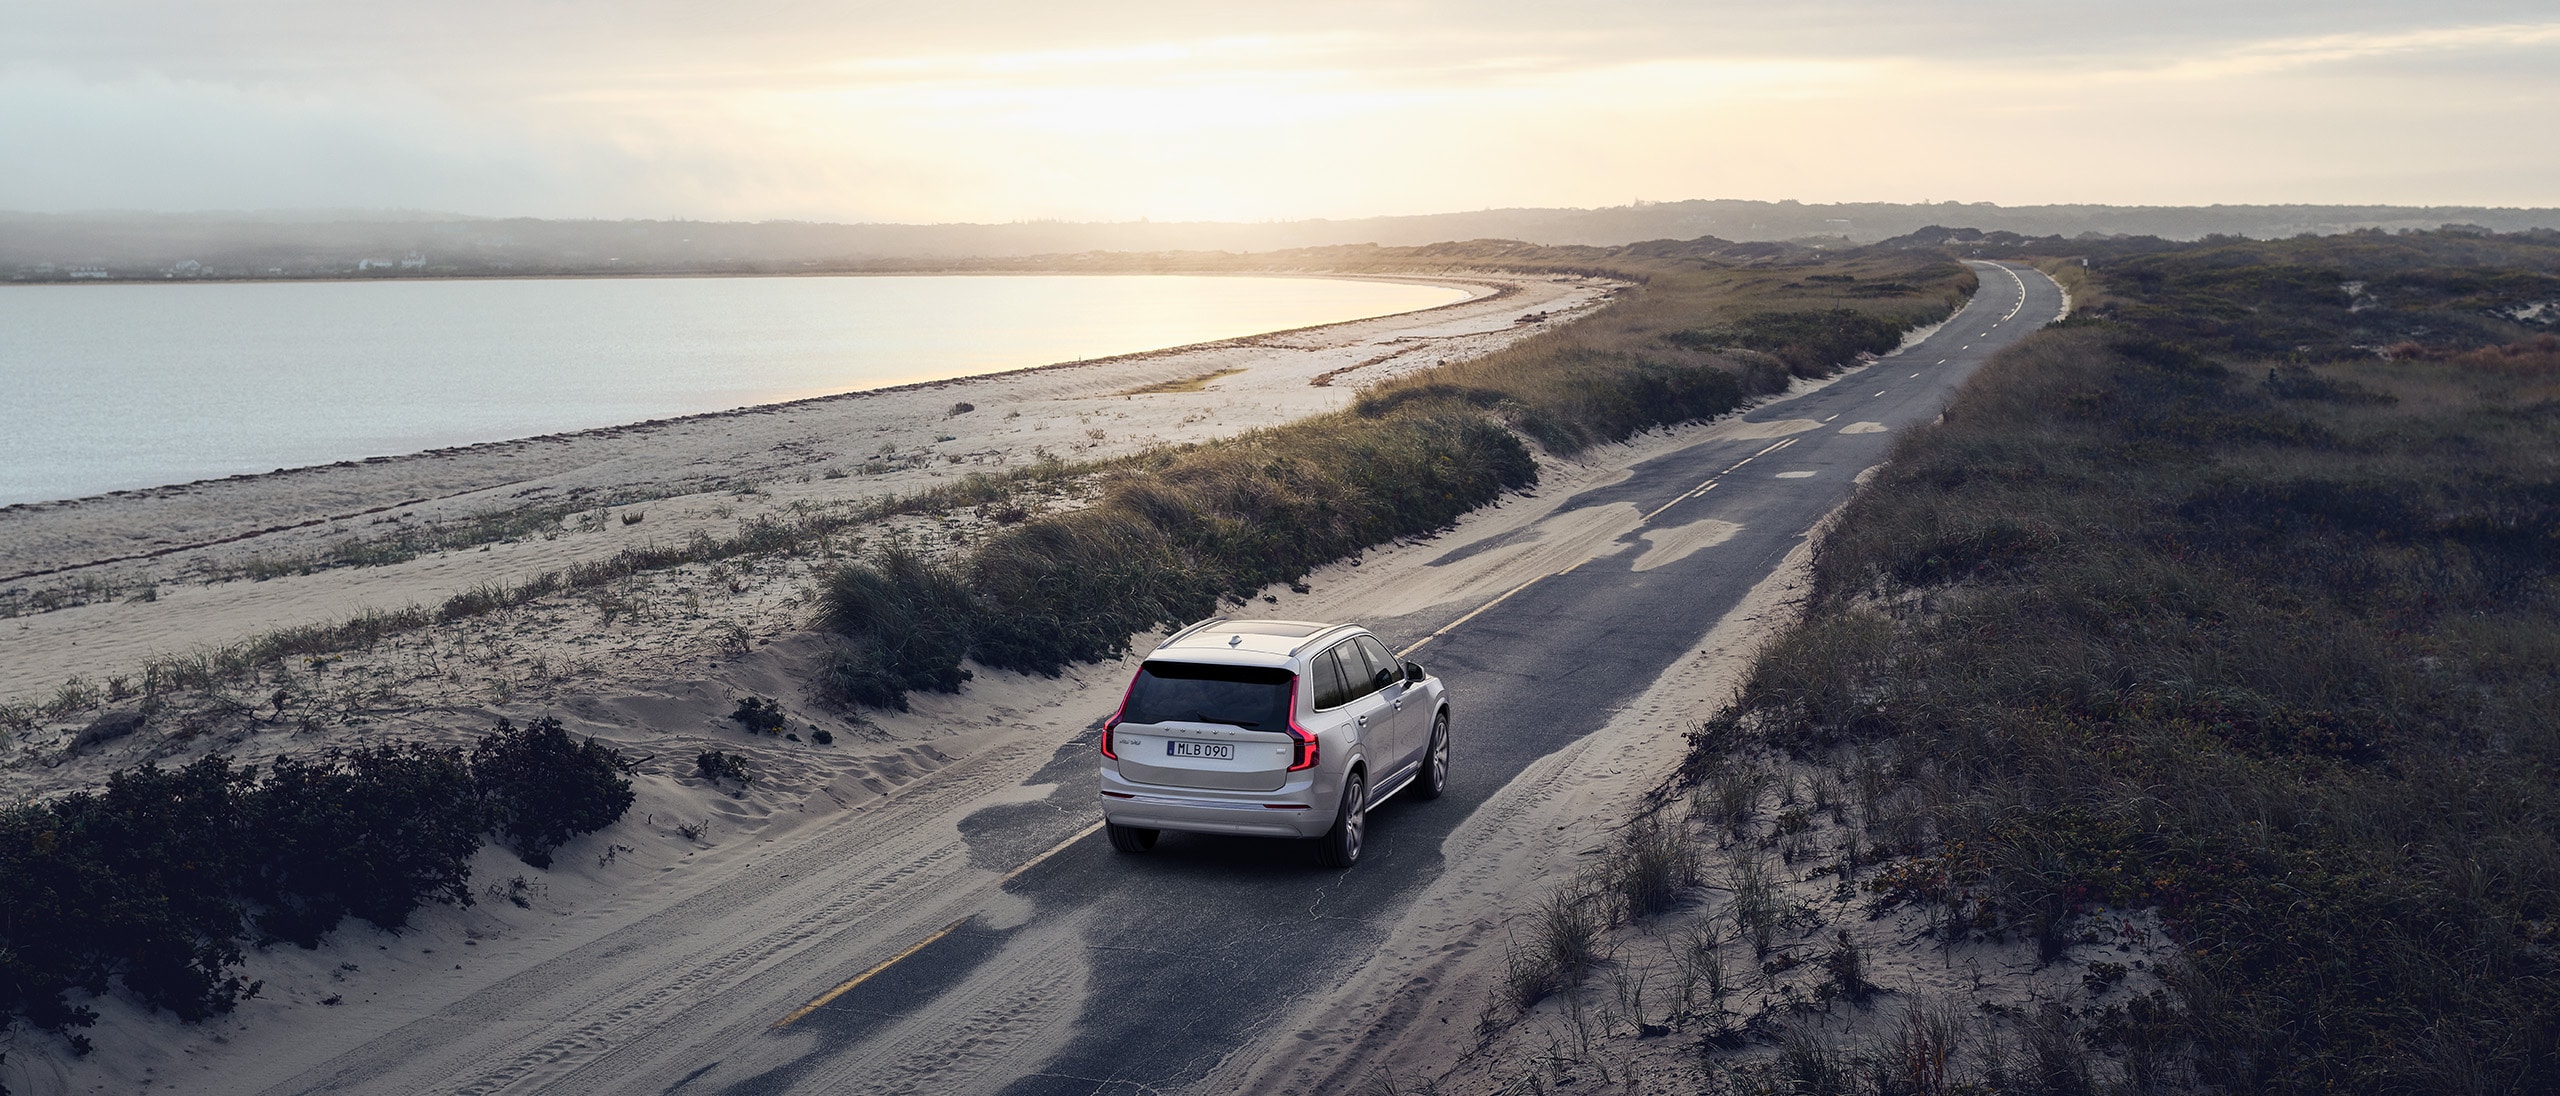 En grå Volvo XC60 kör på en landsväg omgiven av öppna fält i gryningen